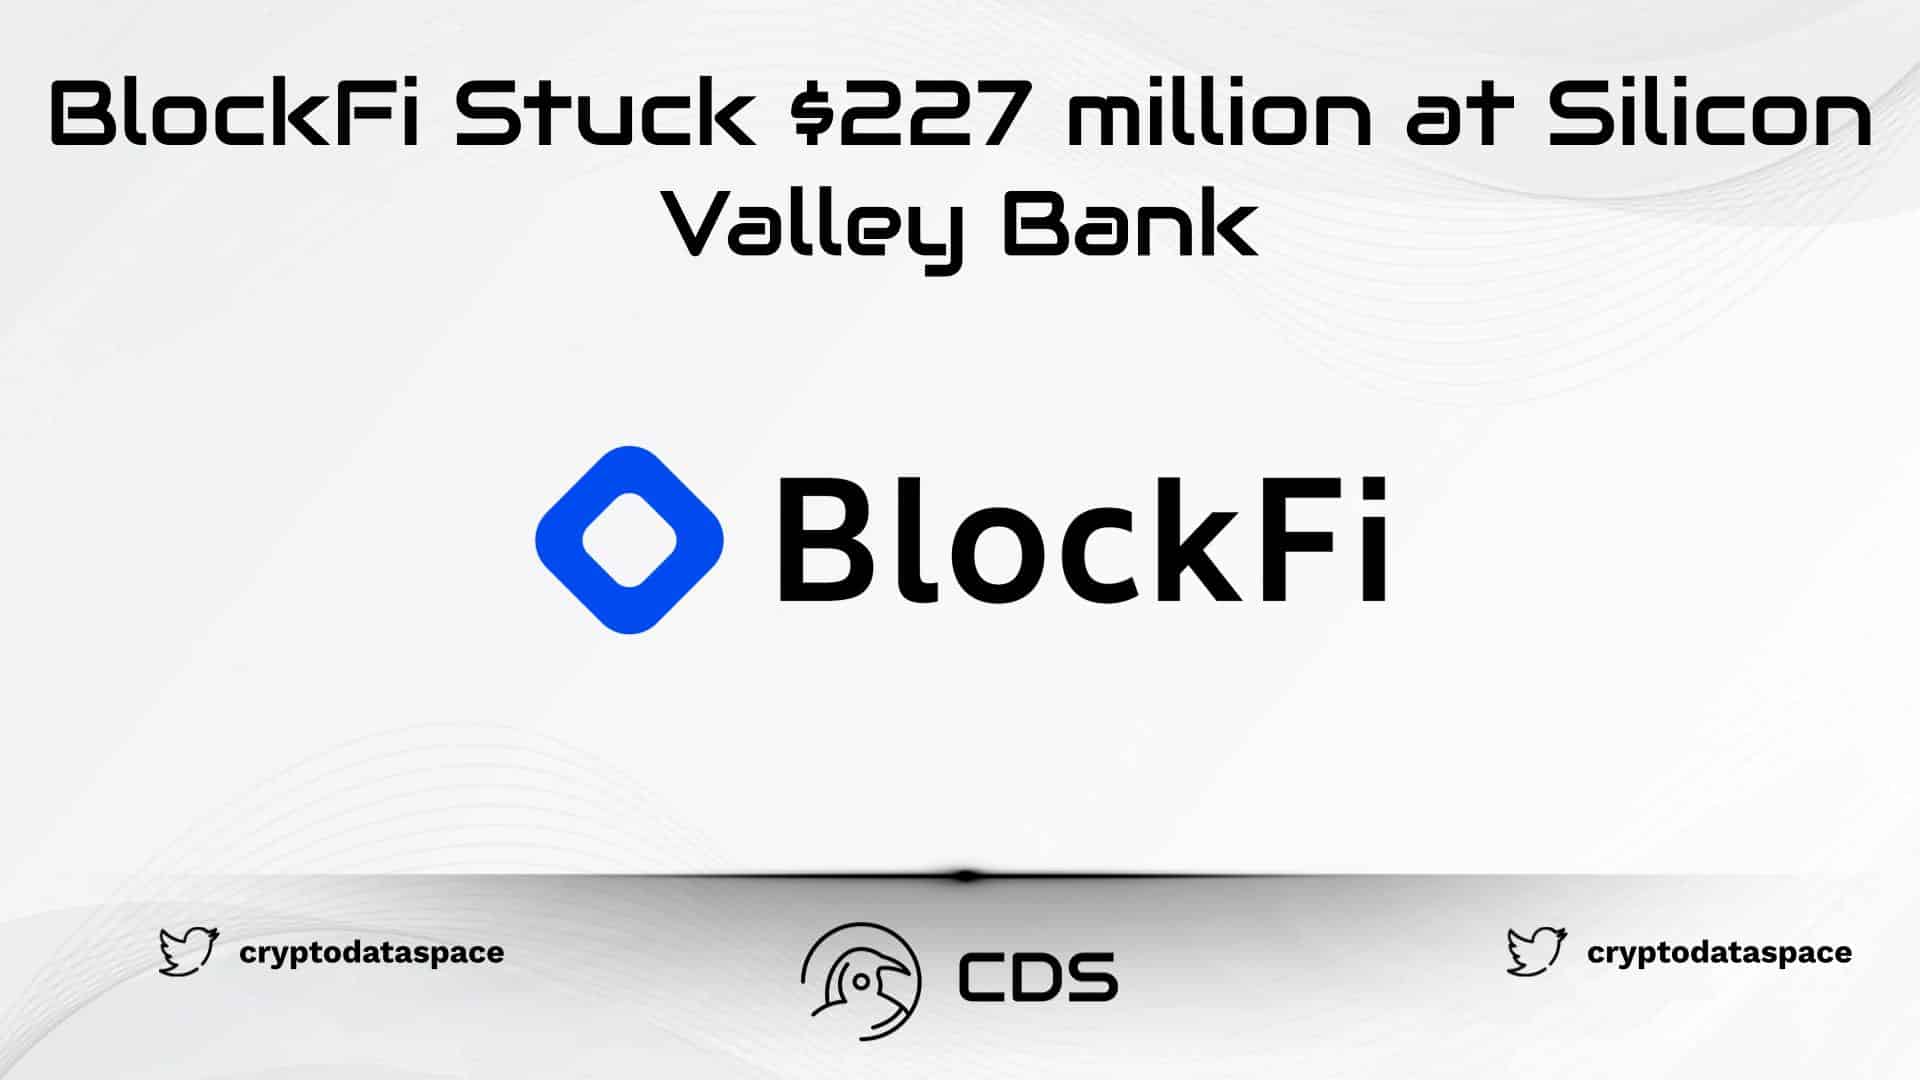 BlockFi Stuck $227 million at Silicon Valley Bank